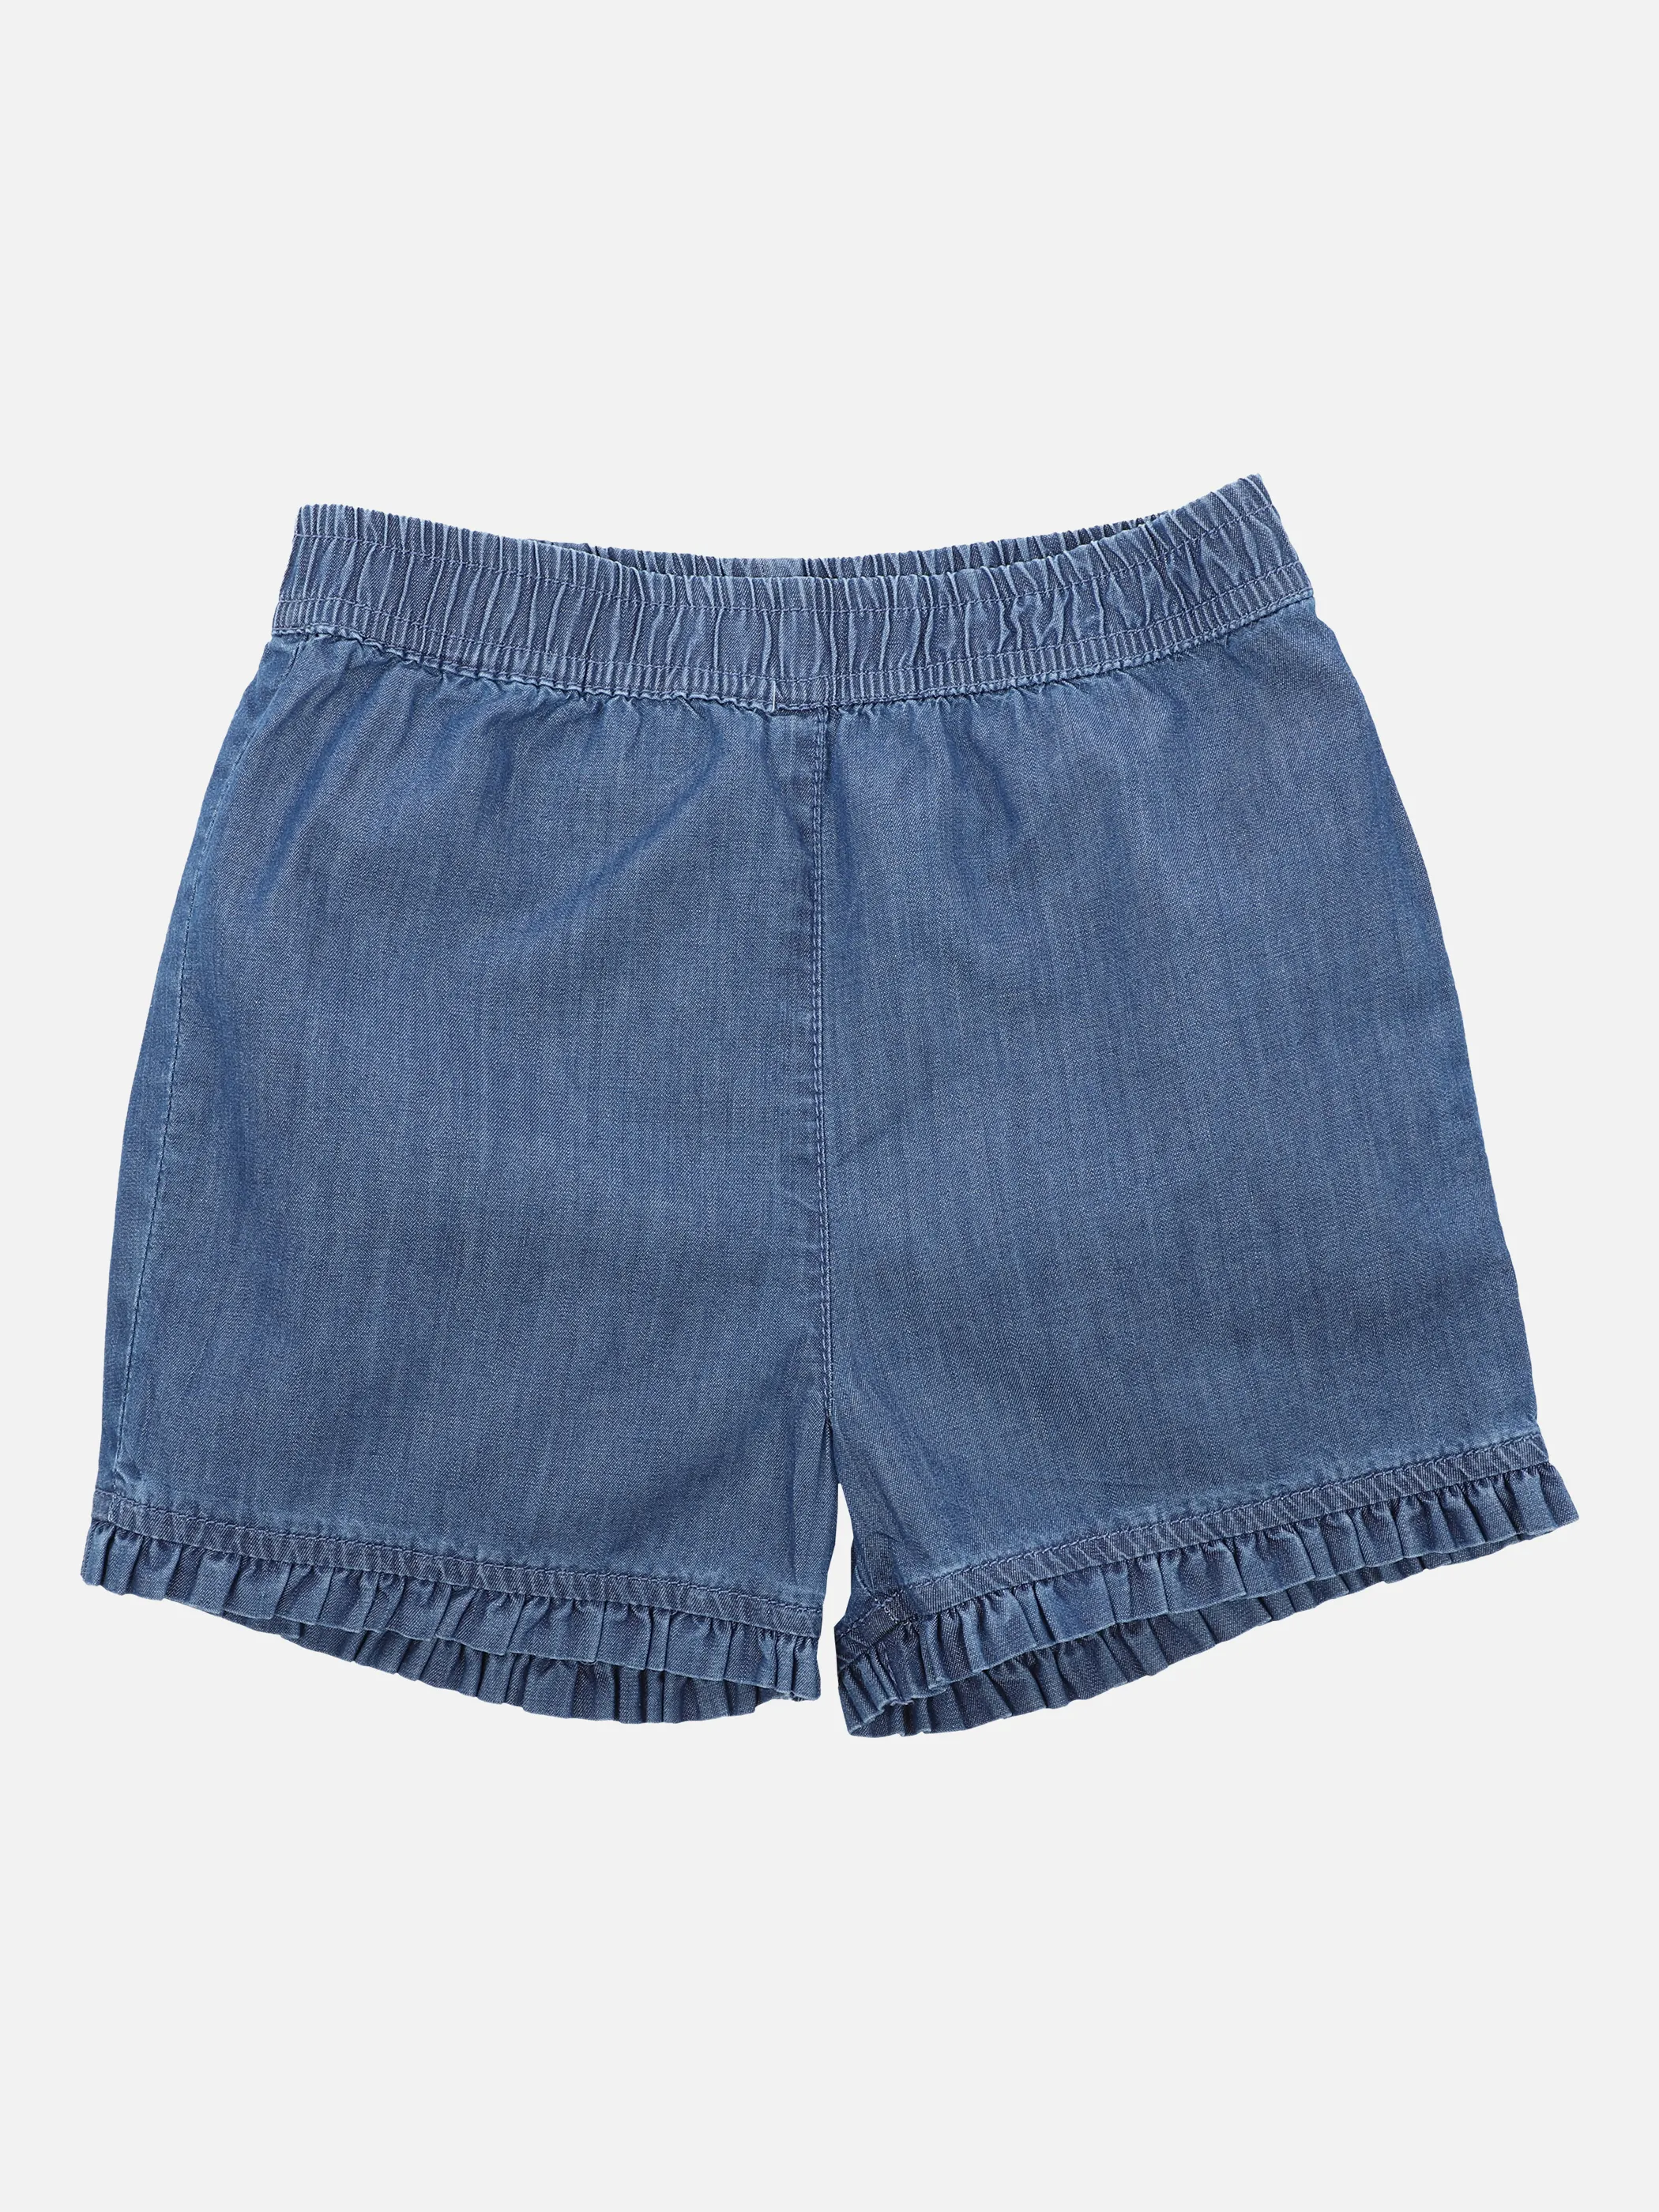 Stop + Go MG Jeans Shorts in hellem Blau 862788 HELLBLAU 1